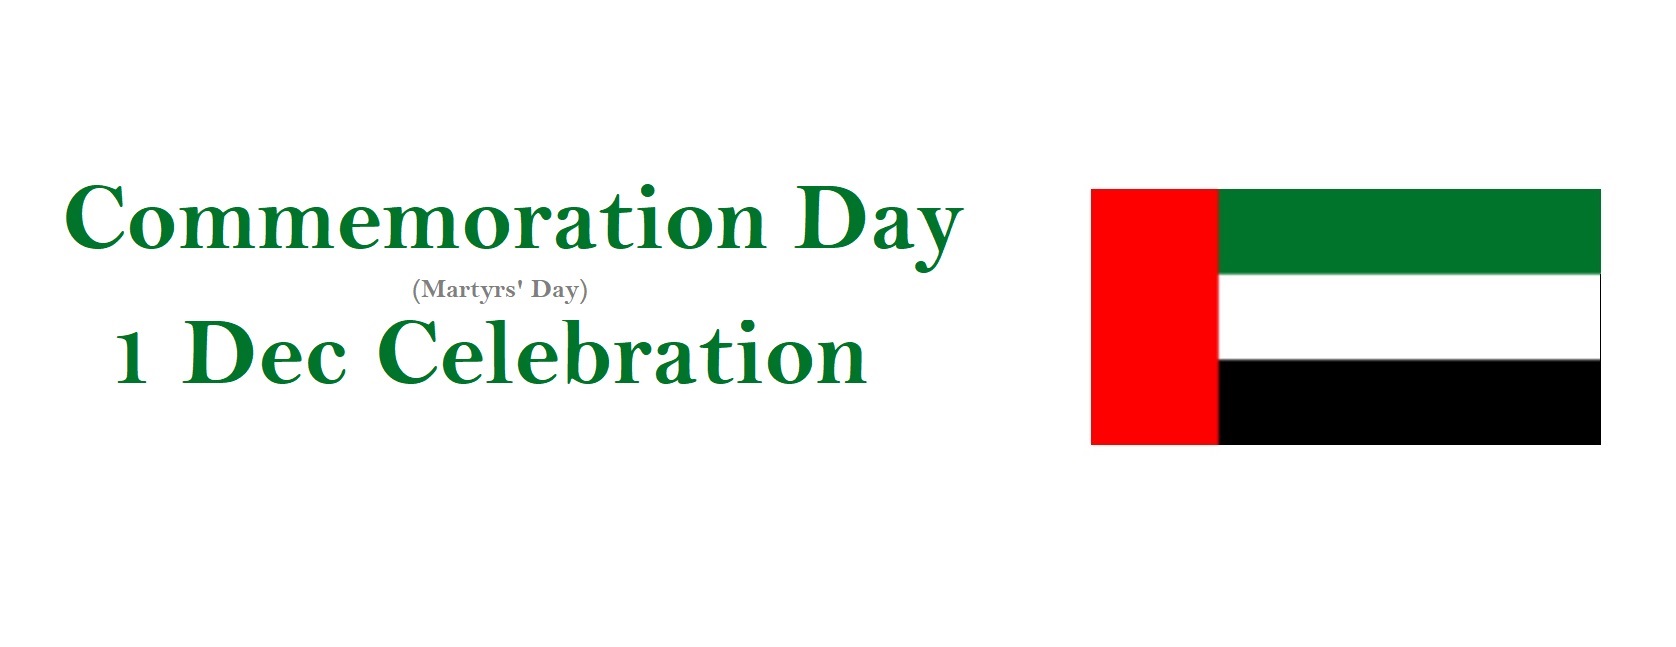 Commemoration Day National Holiday, UAE